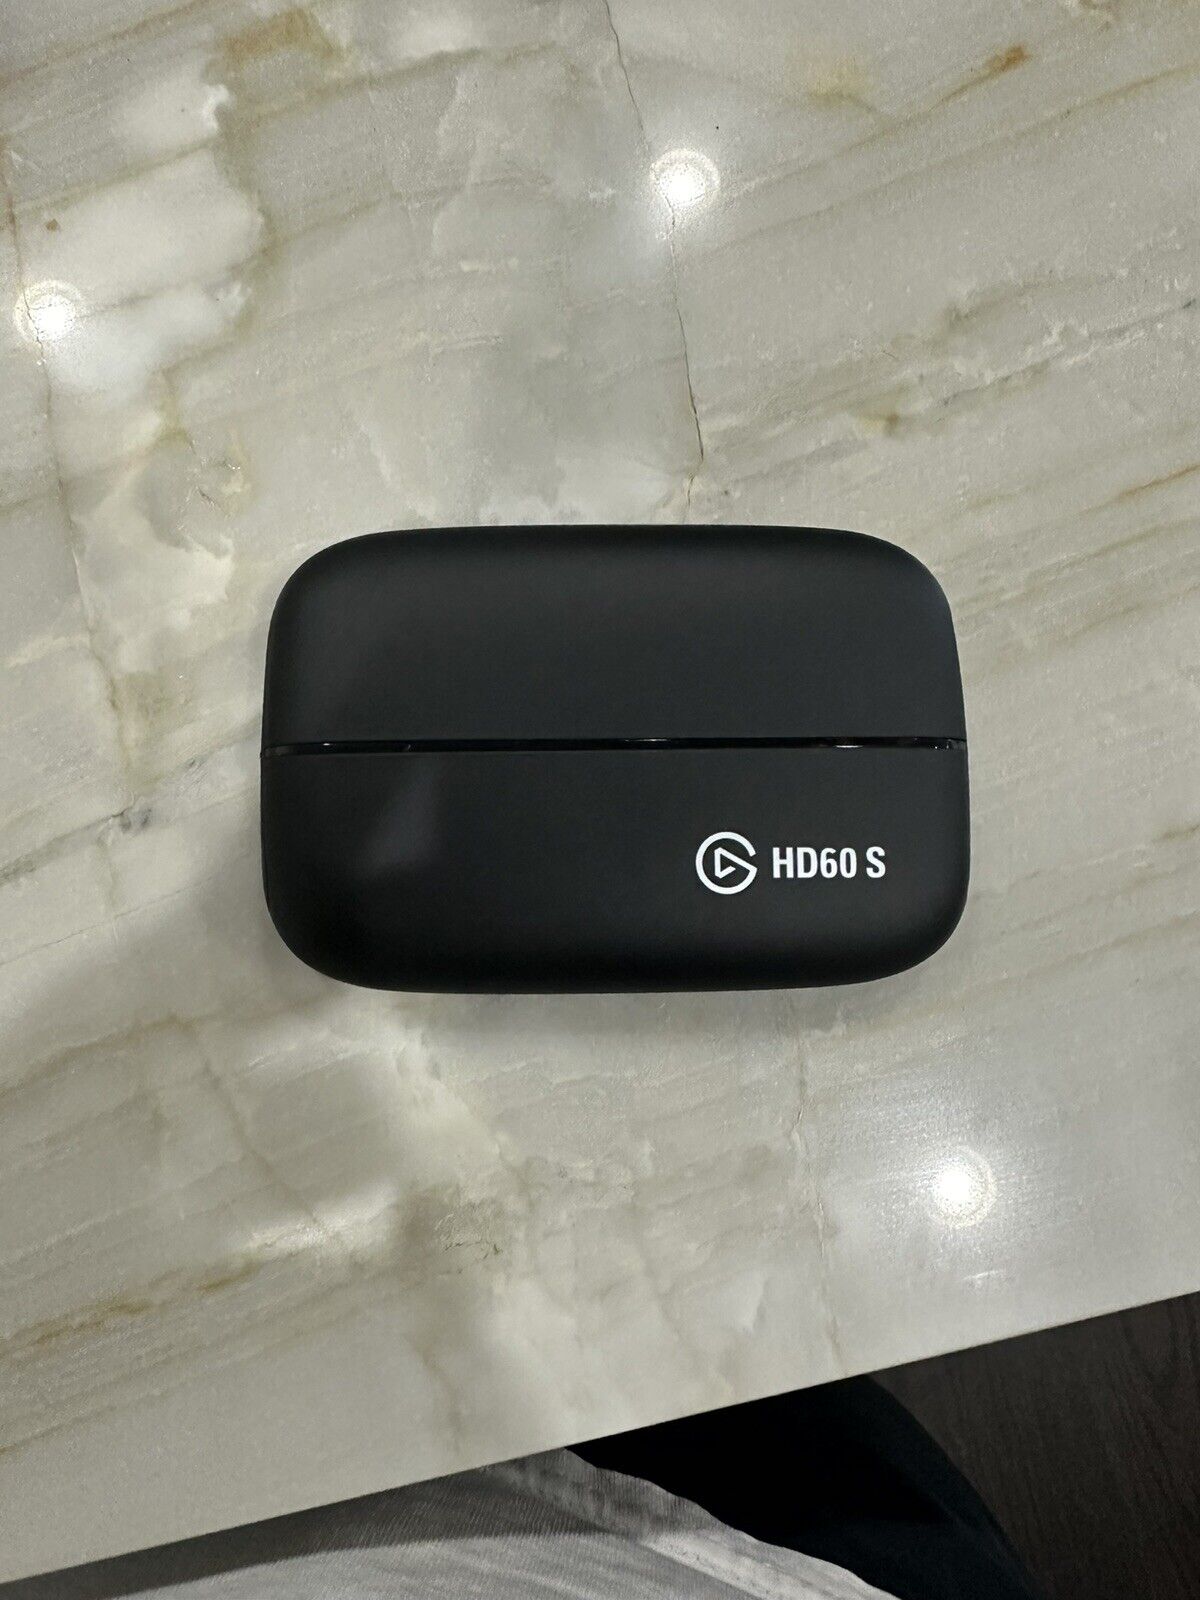 Elgato HD60 S Game Capture Card - Black (no box or cords)